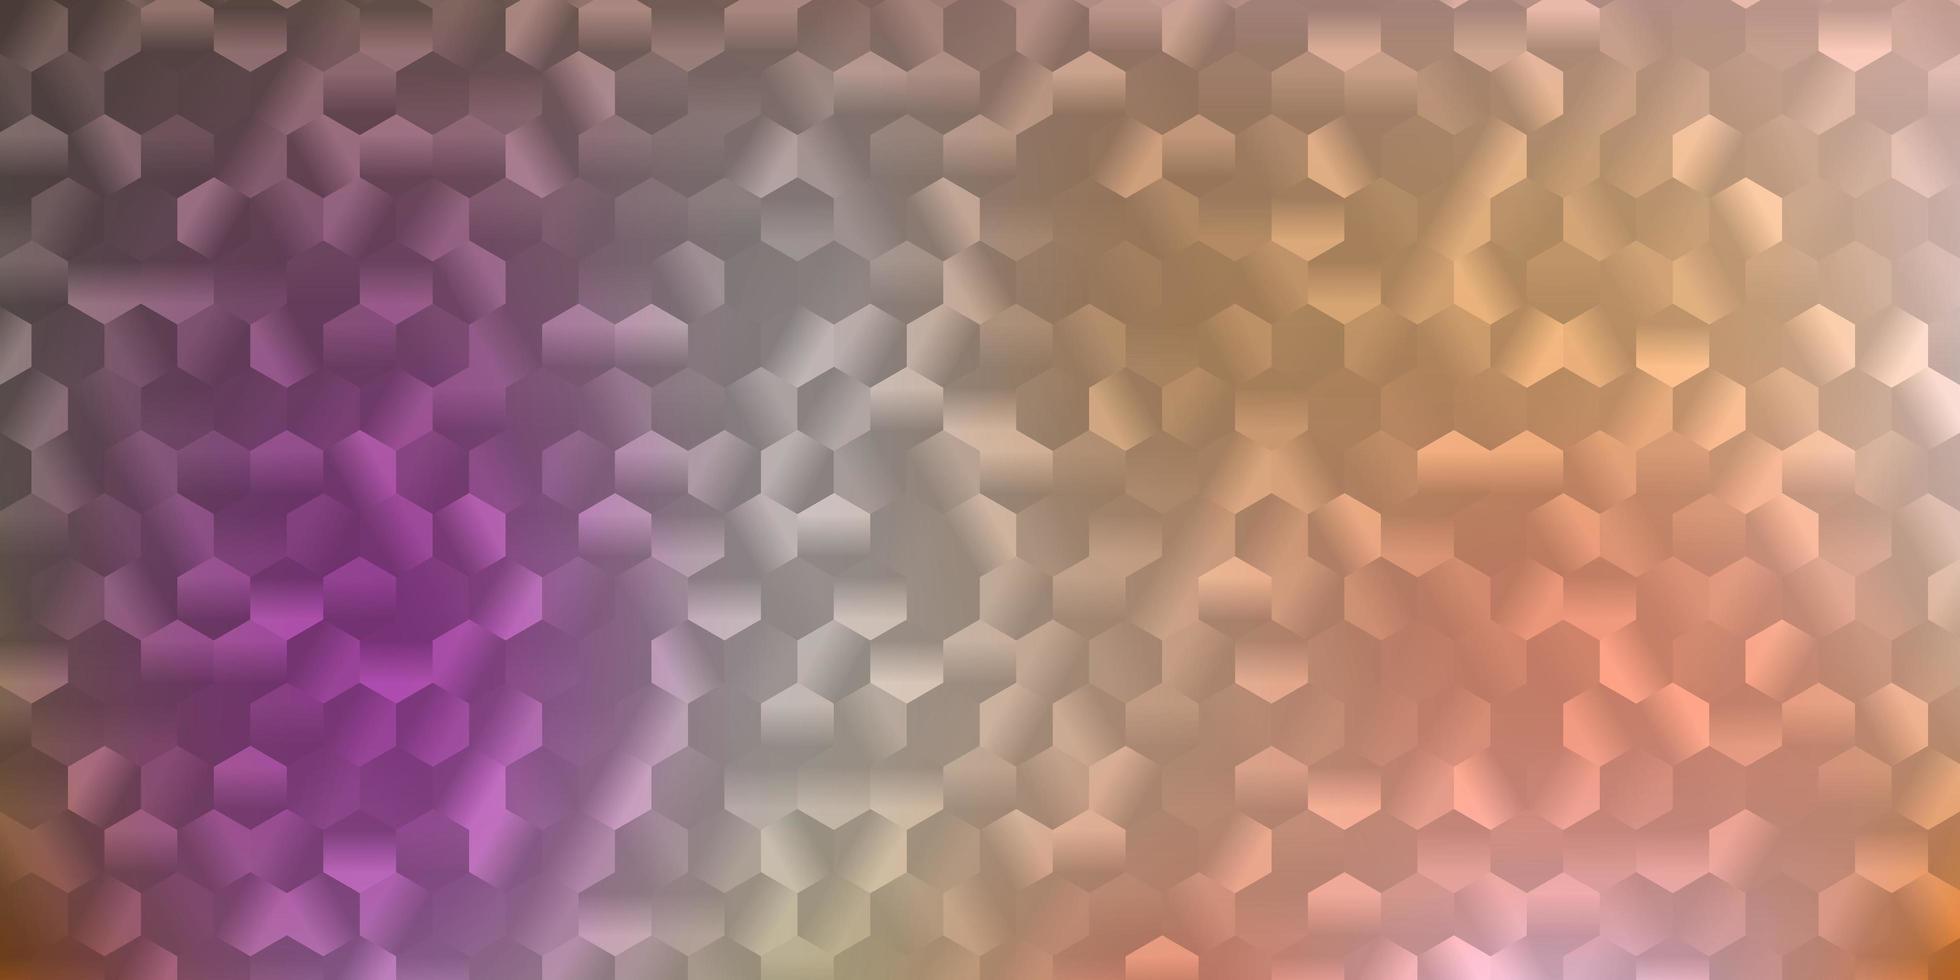 diseño de vector amarillo rosa claro con formas de hexágonos